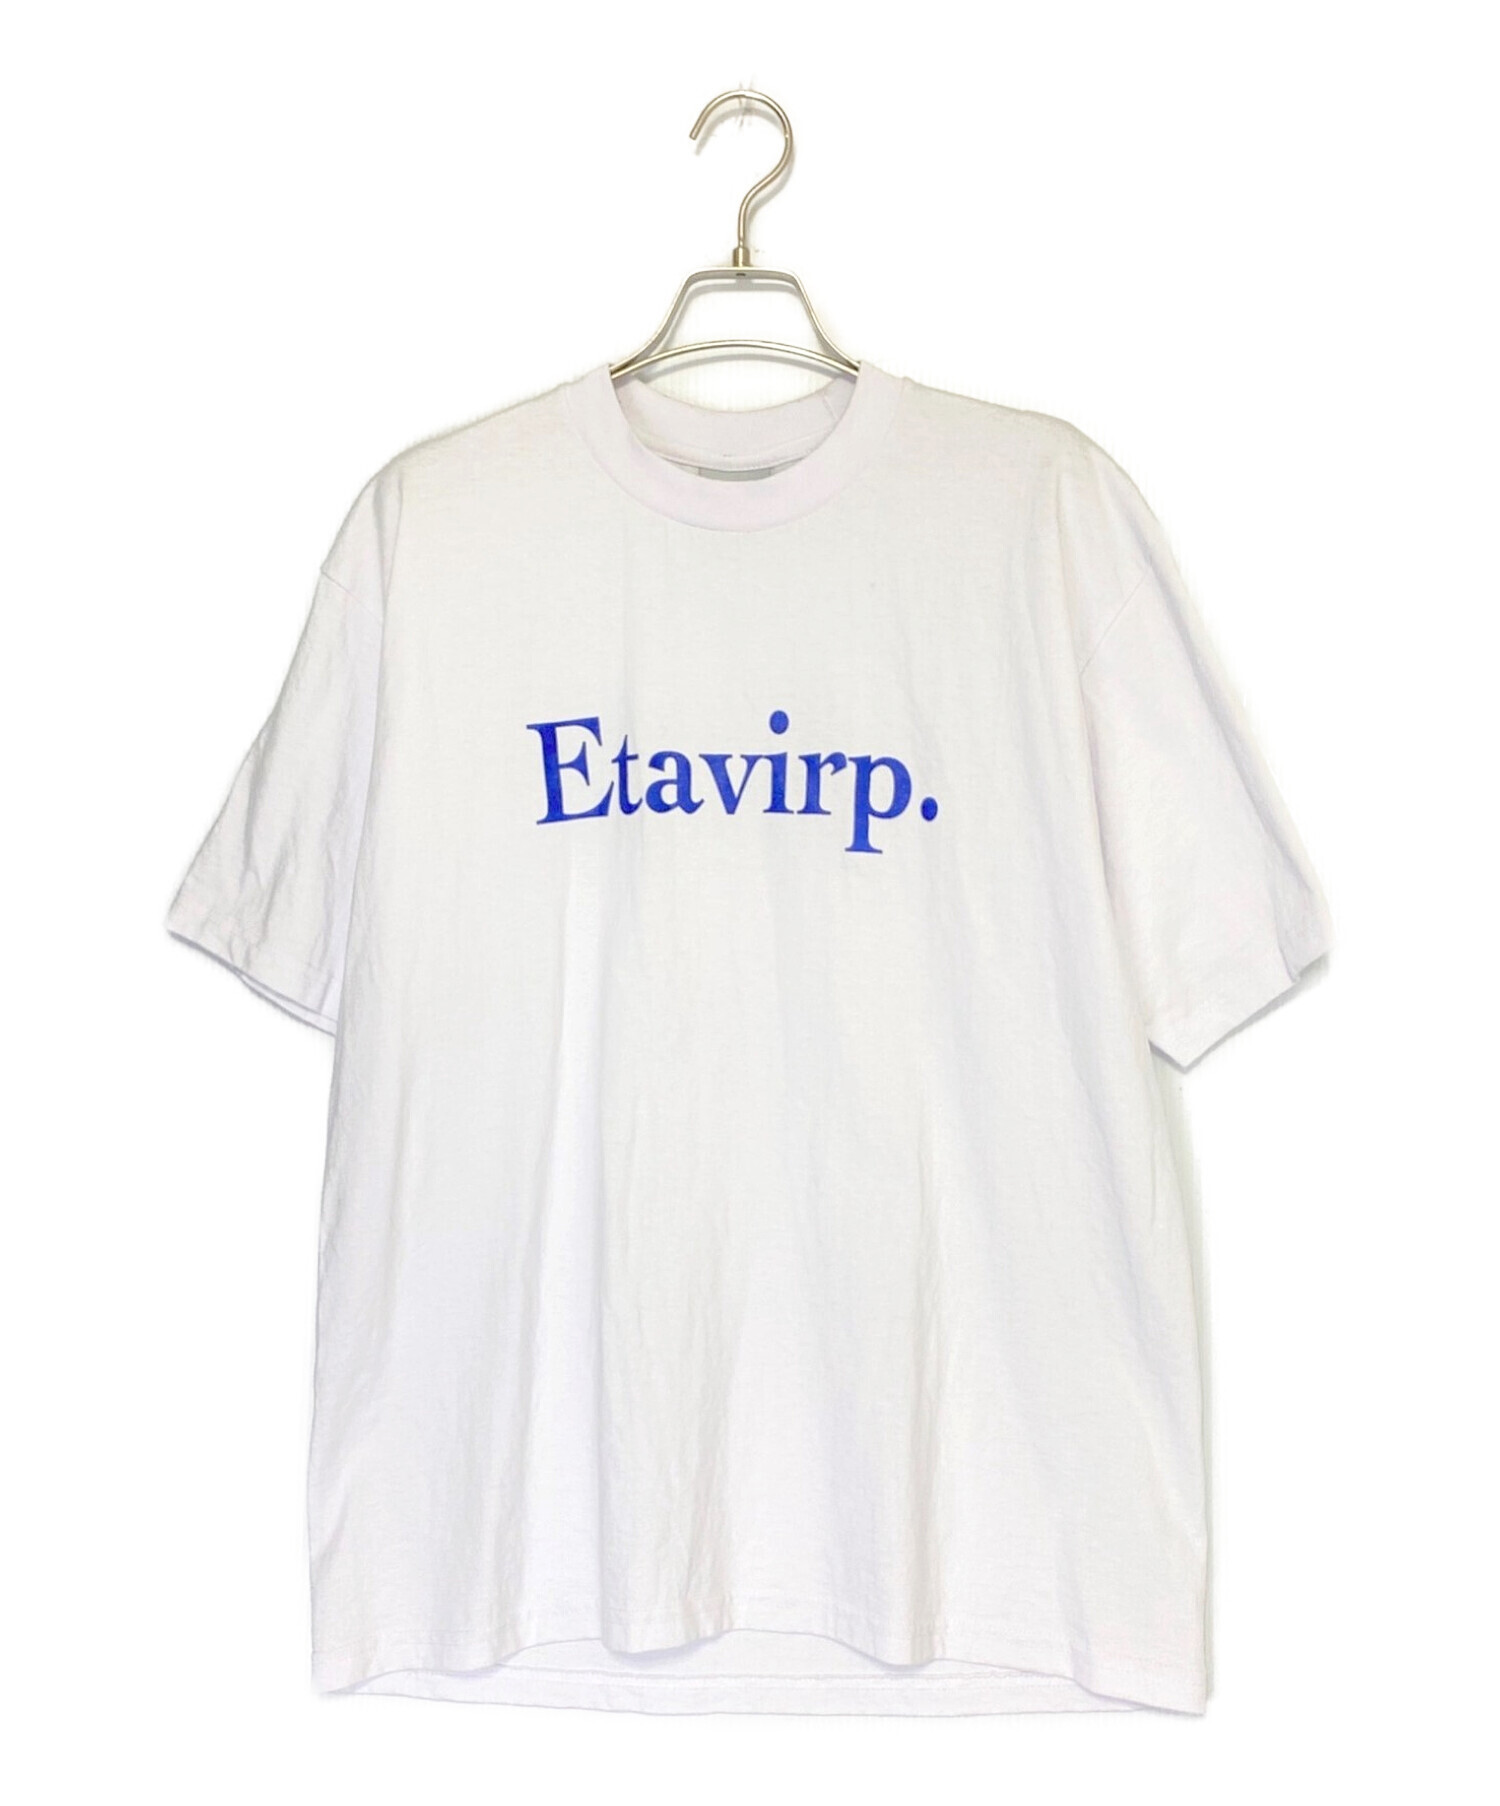 10,580円Etavirp.半袖Tシャツ